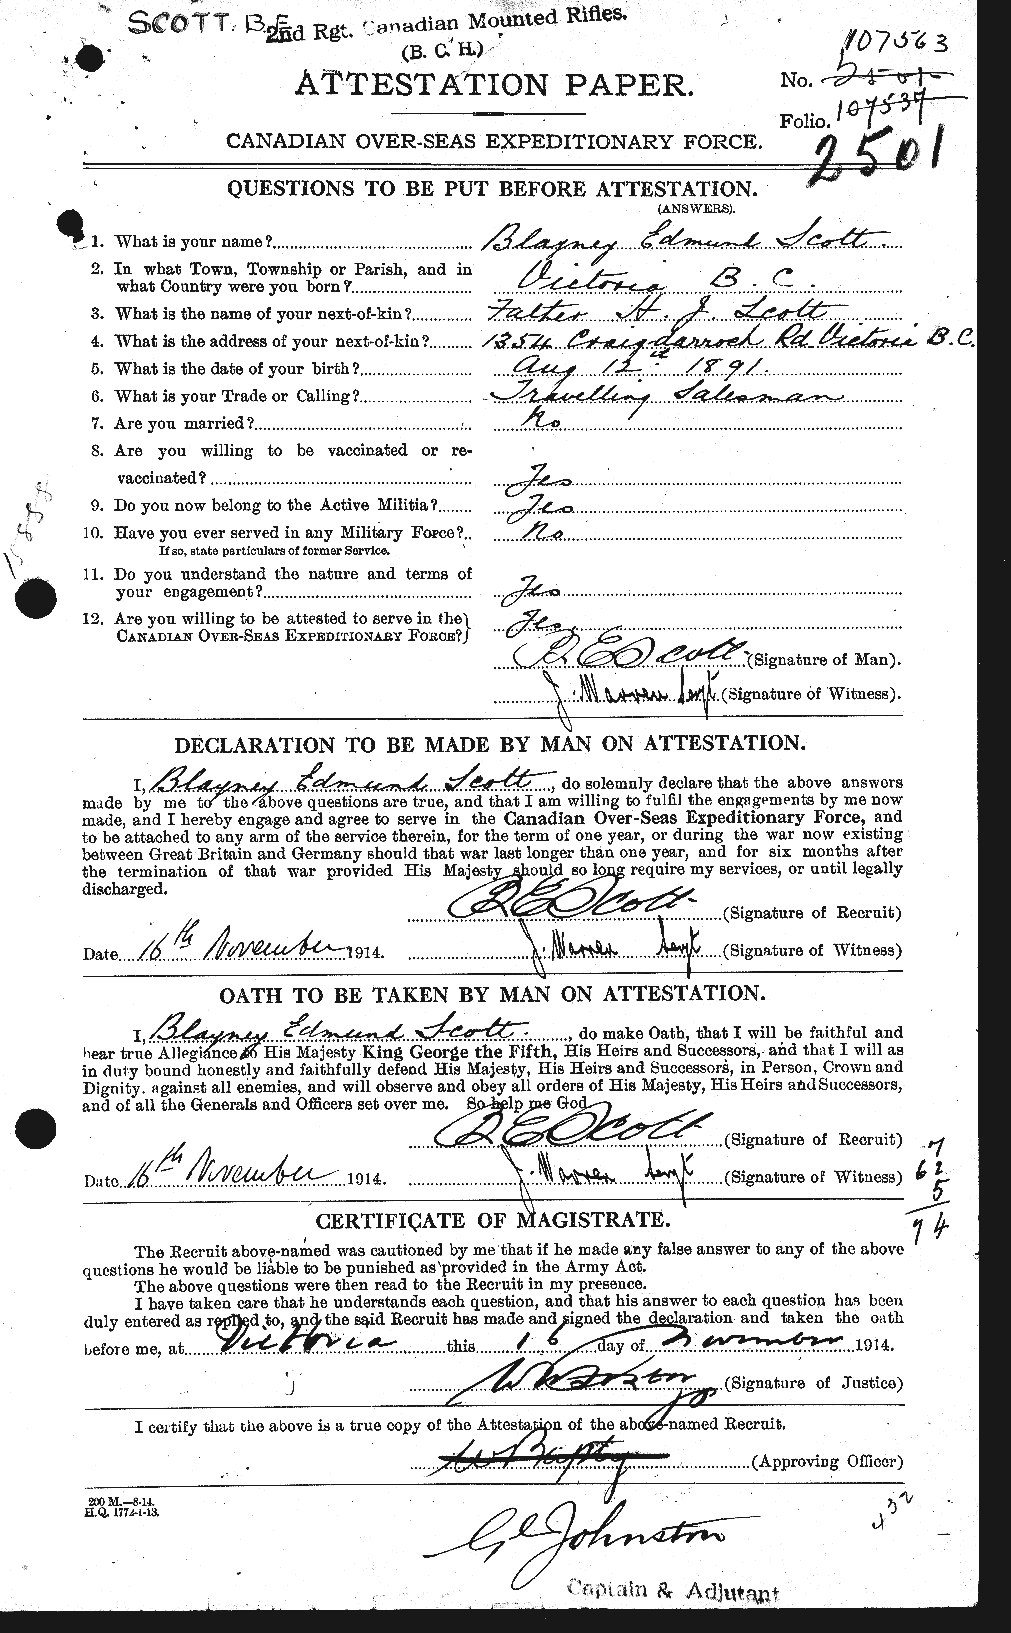 Dossiers du Personnel de la Première Guerre mondiale - CEC 086212a